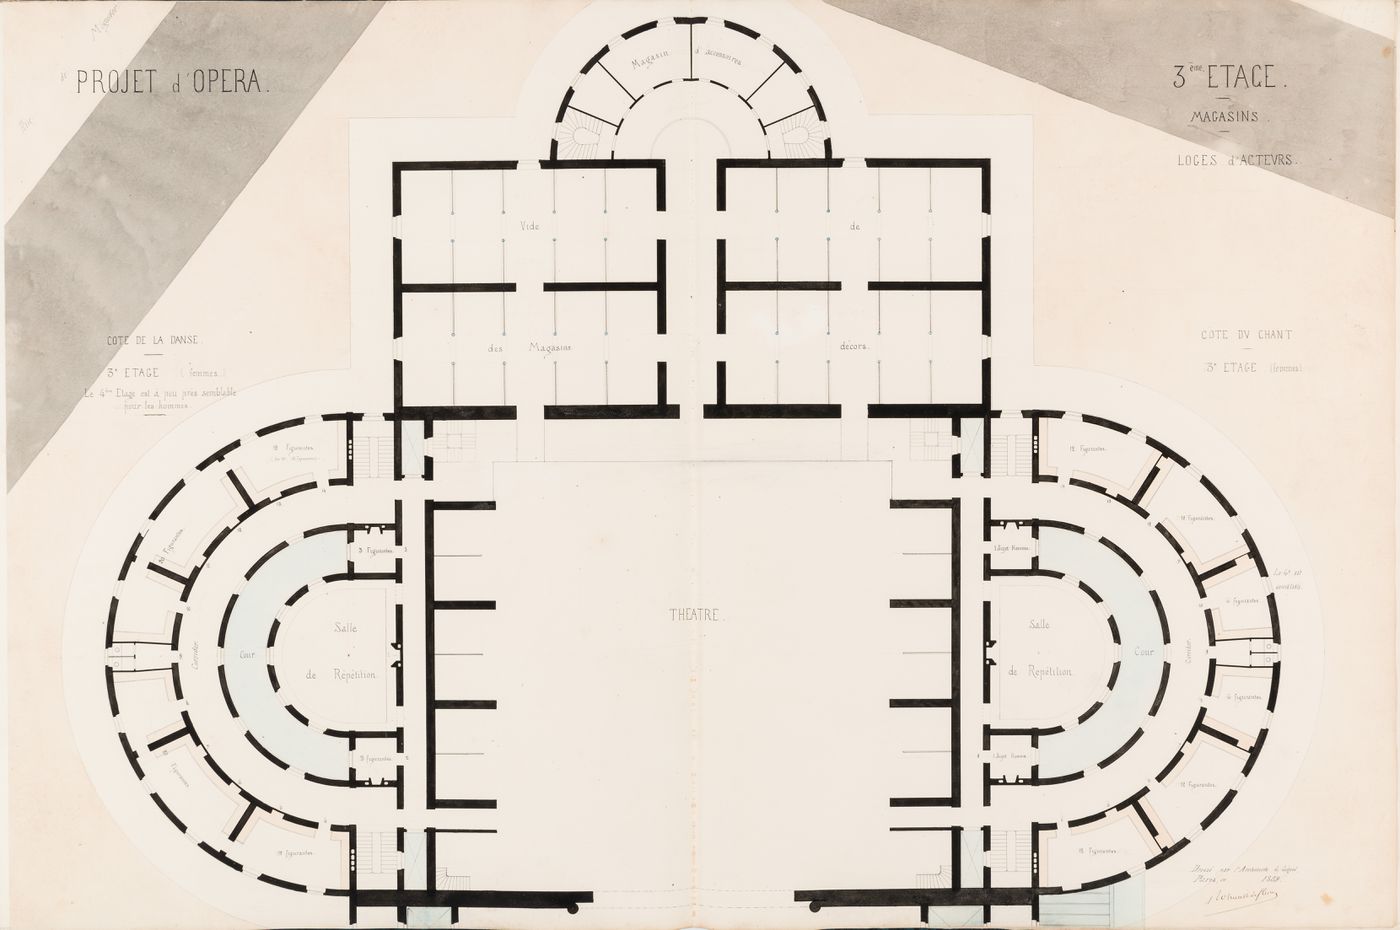 Project for an opera house for the Théâtre impérial de l'opéra: Plan for the "3e étage" showing the storerooms, "cote de la danse", and "cote du chant", including the actors' dressing rooms